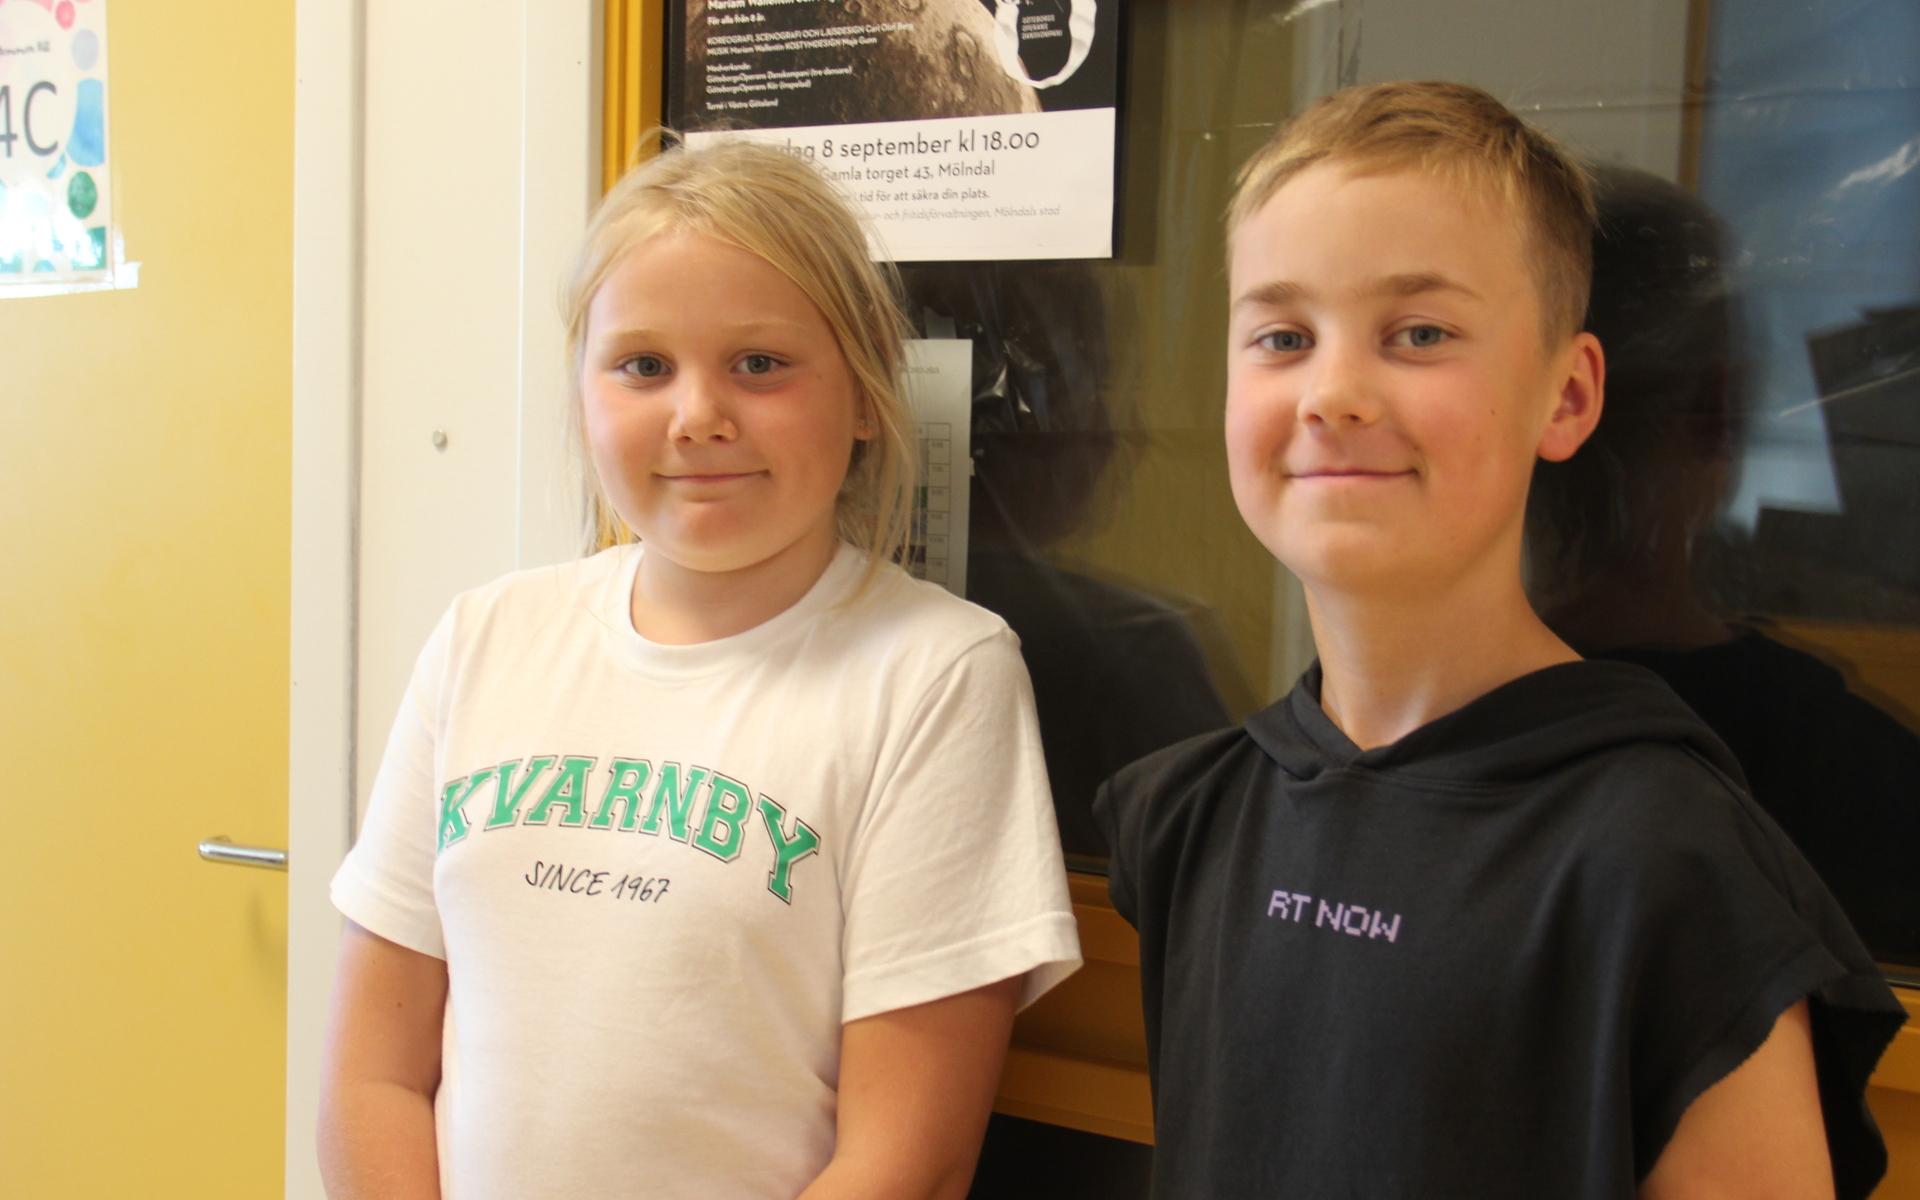 Saga Sjöman Netzell och Eddie Kintom var två av fjärdeklassarna som såg föreställningen.